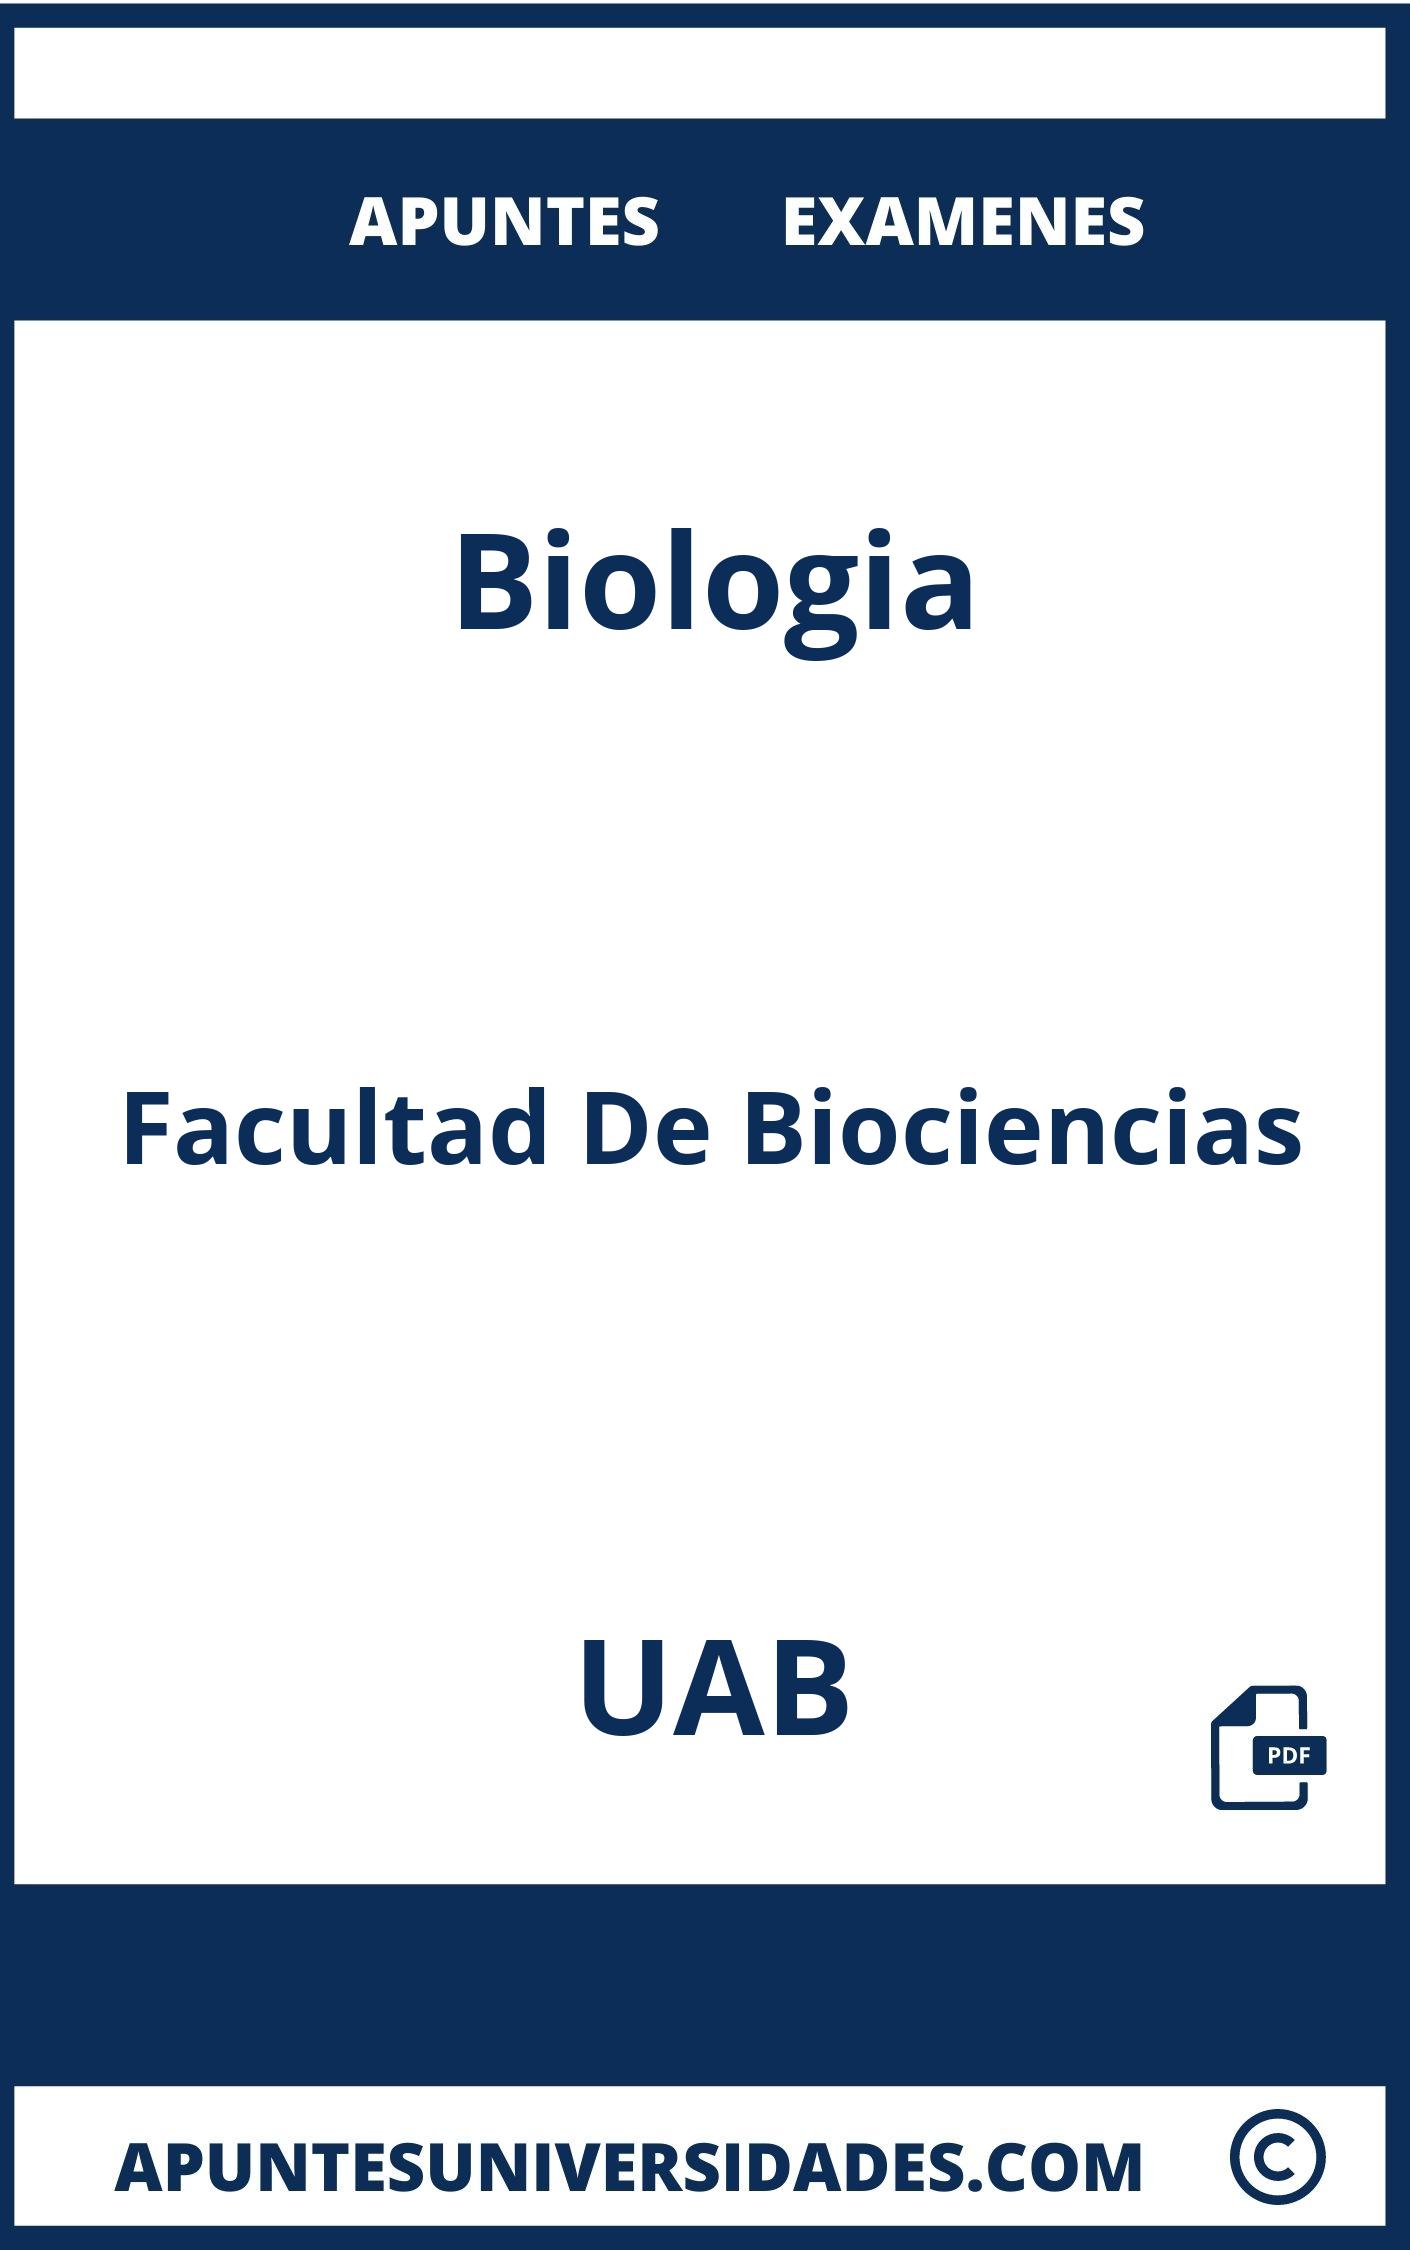 Biologia UAB Examenes Apuntes